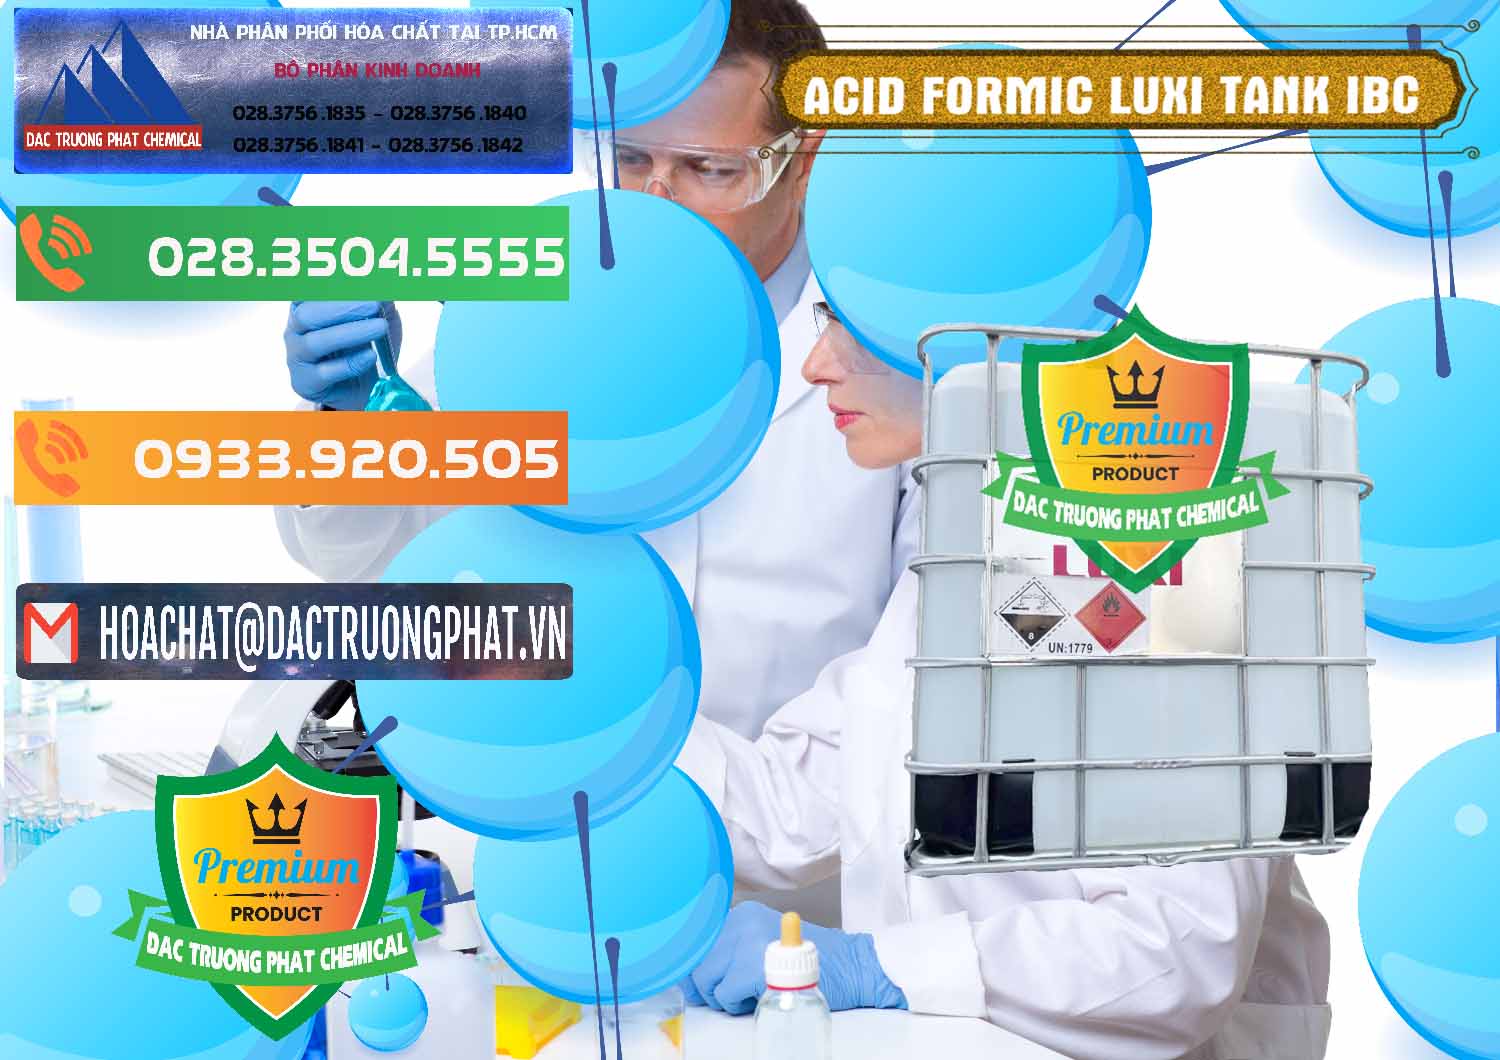 Nơi kinh doanh & bán Acid Formic - Acid Formic Tank - Bồn IBC Luxi Trung Quốc China - 0400 - Công ty chuyên cung cấp _ bán hóa chất tại TP.HCM - hoachatxulynuoc.com.vn